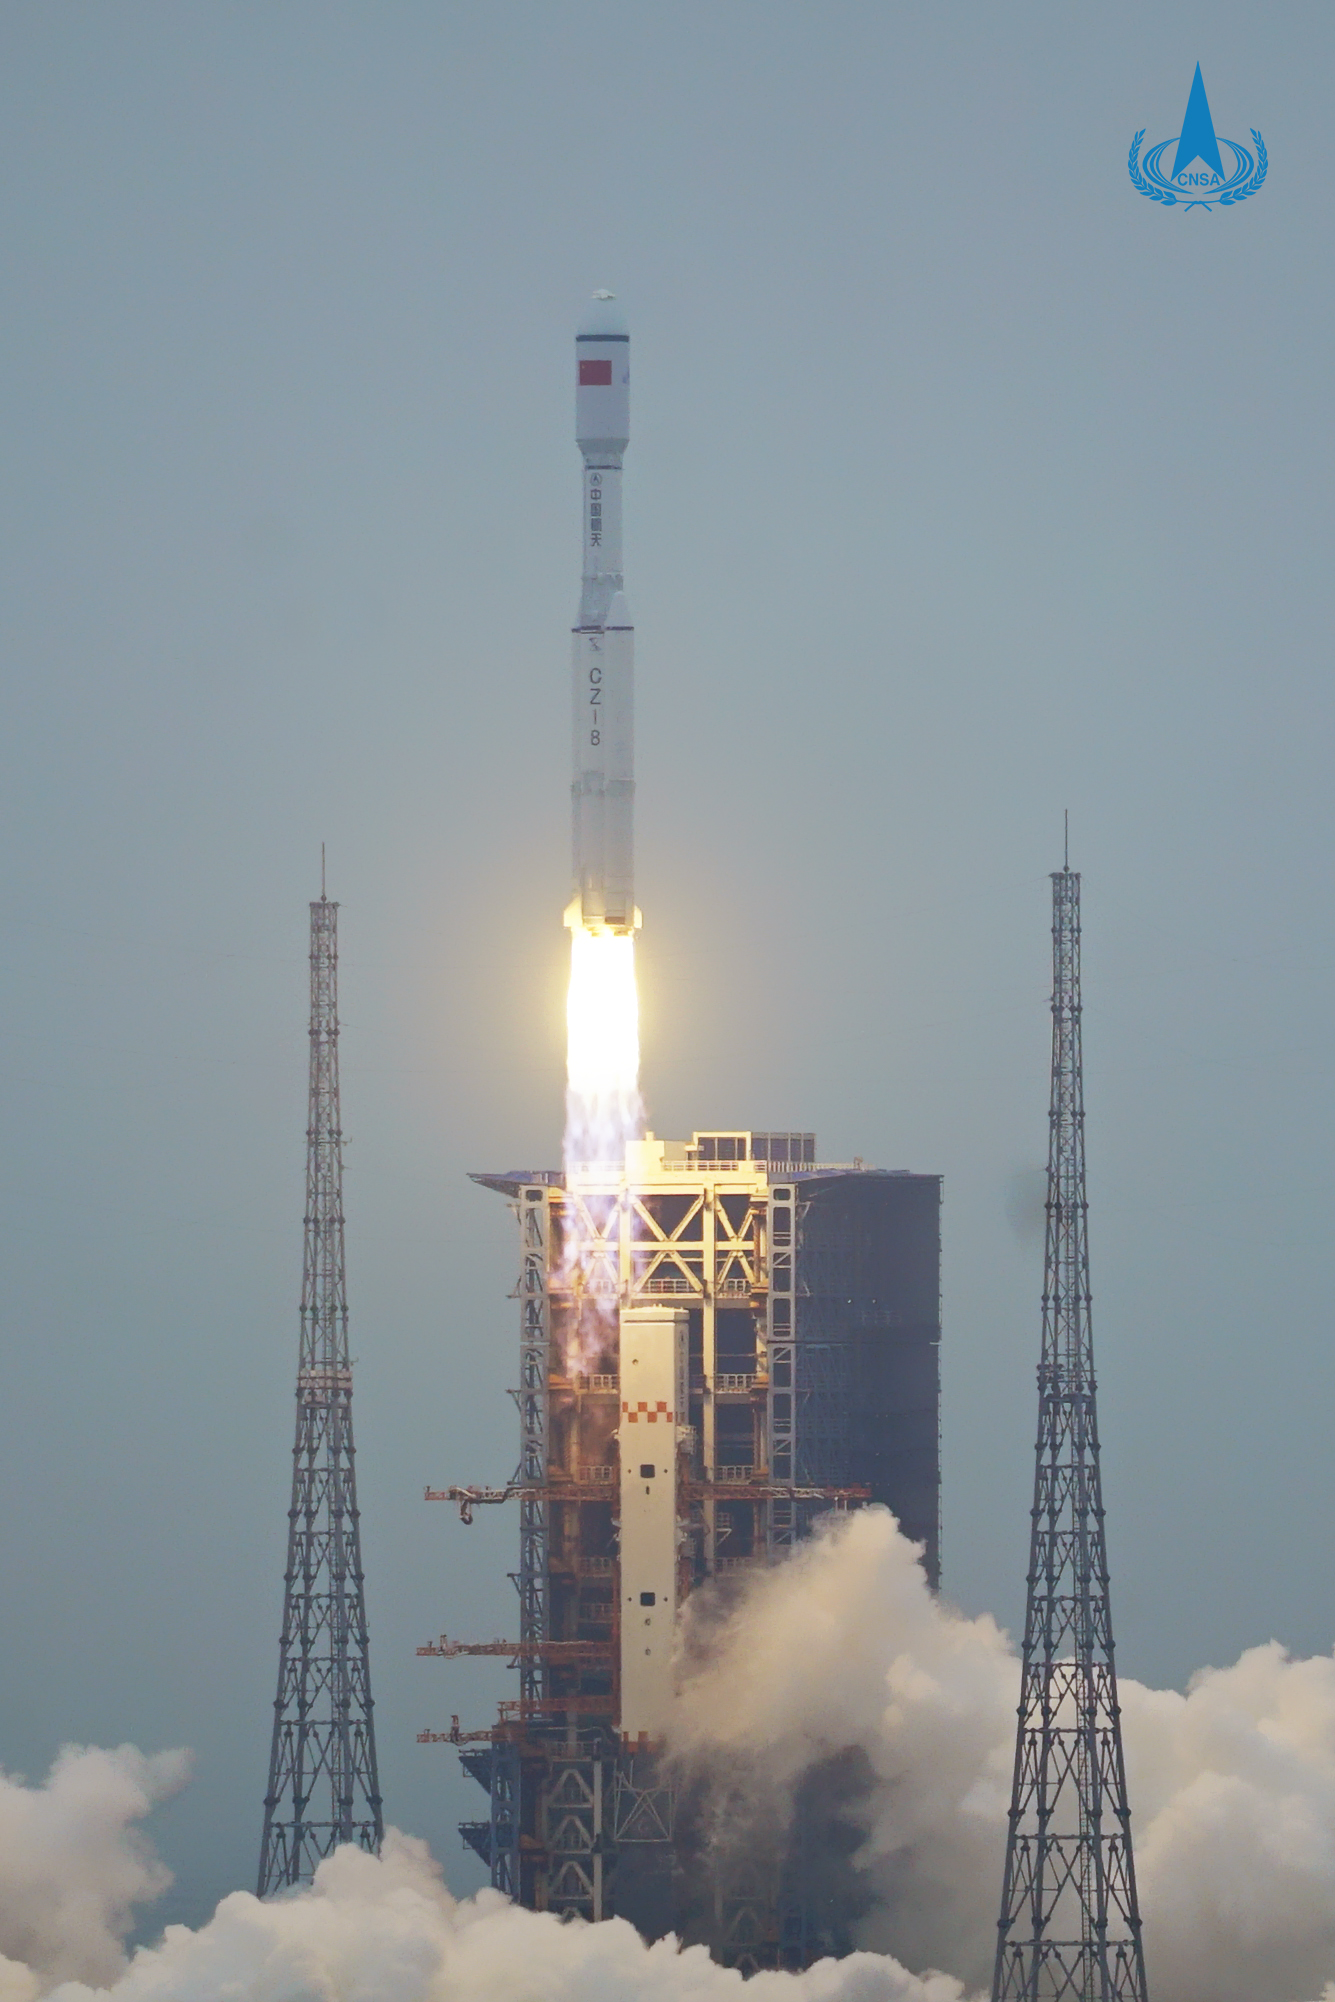 中型运载火箭长征八号首次飞行试验,在中国文昌航天发射场顺利实施